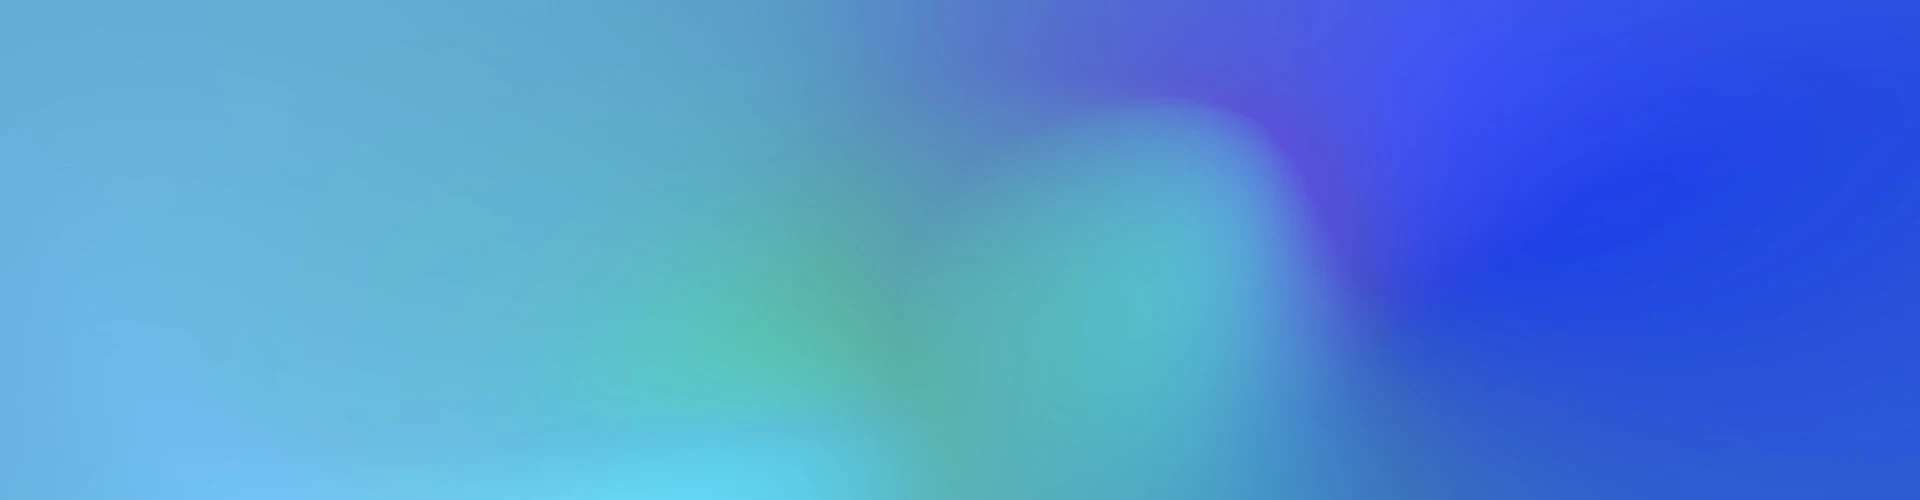 Wattn profil gradient blå